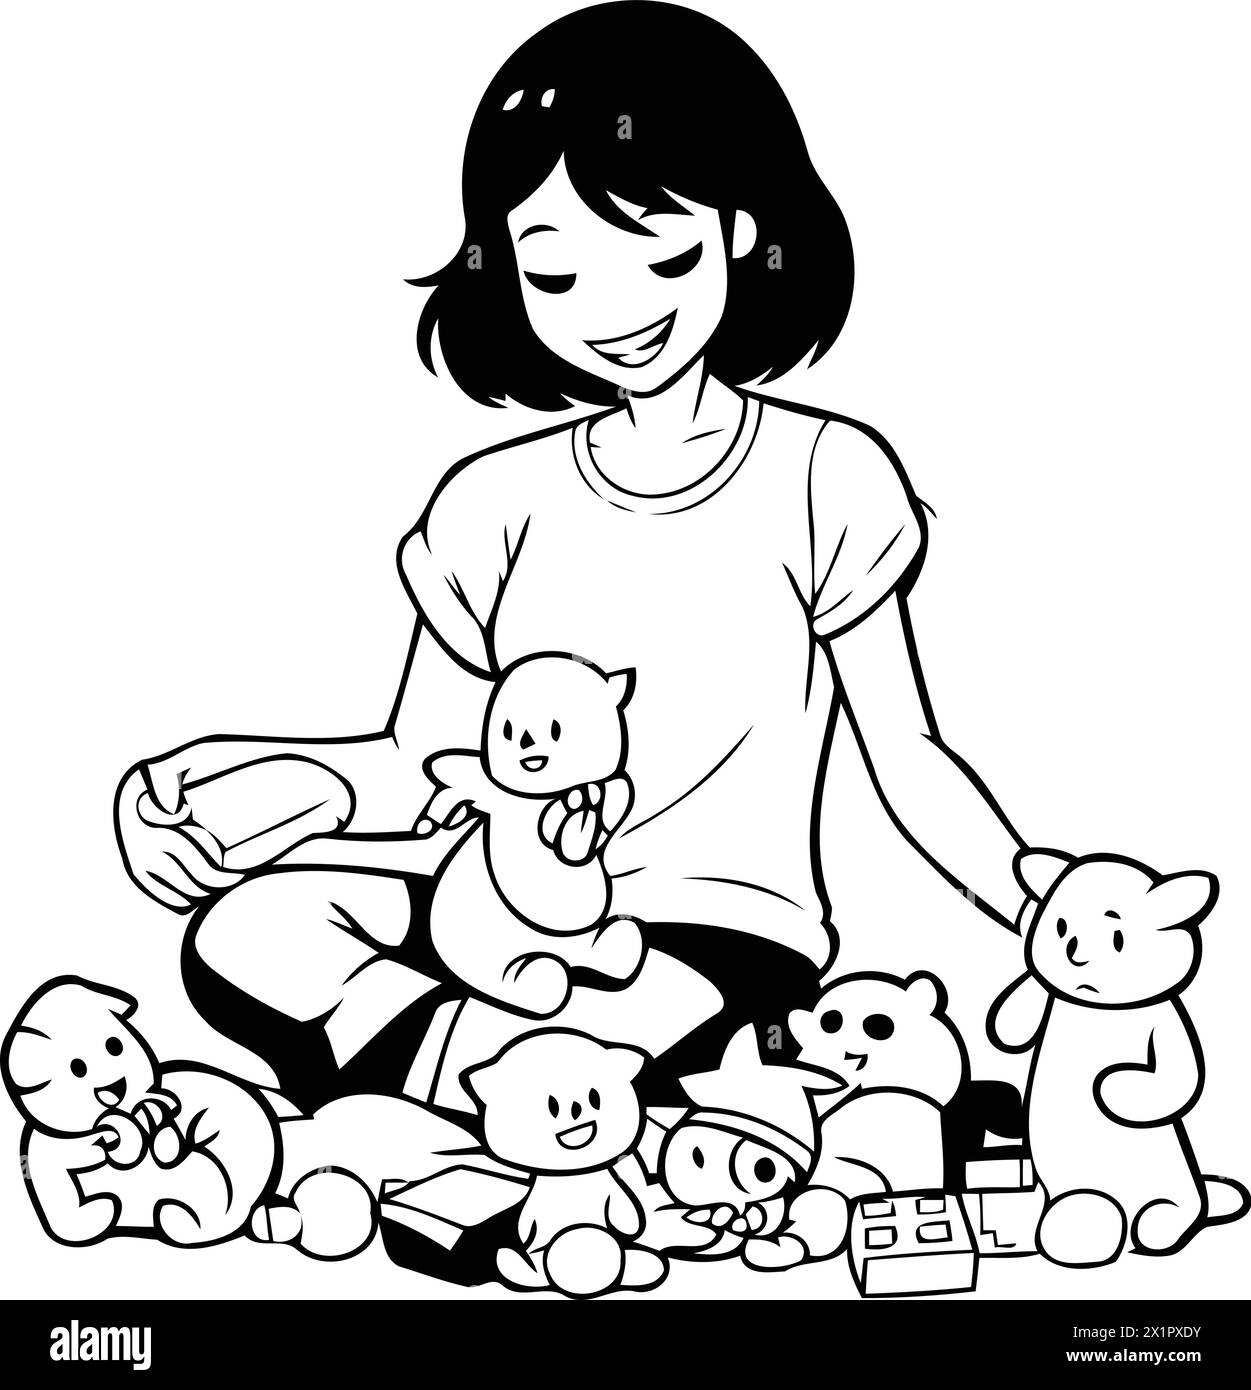 Ragazza che gioca con i cani. Illustrazione vettoriale di una ragazza che gioca con animali domestici. Illustrazione Vettoriale